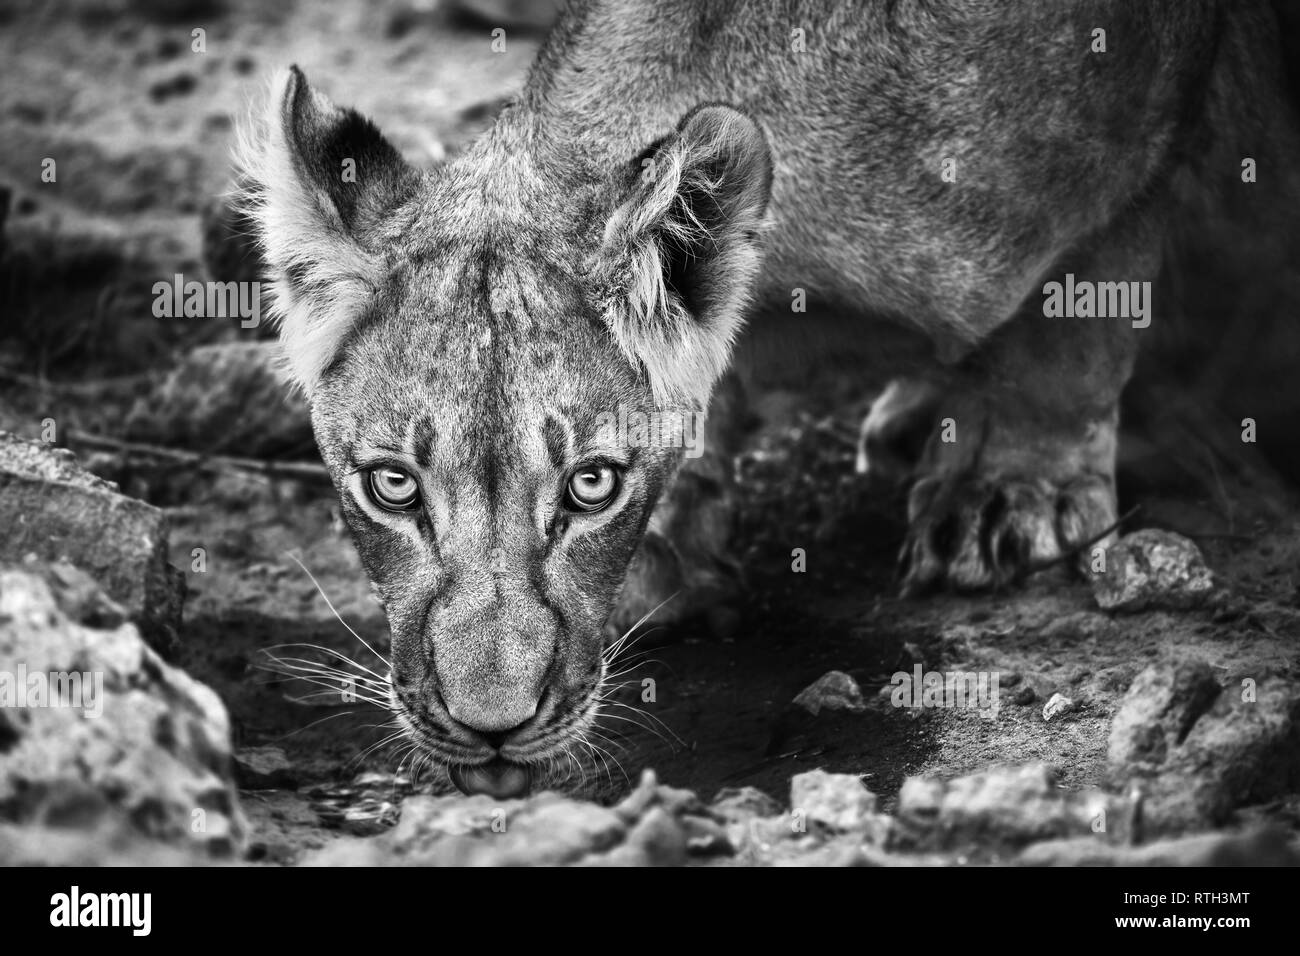 Sub erwachsenen männlichen Löwen Getränke nervös an einer Pfütze in der Kalahari, Südafrika. Panthera leo Stockfoto